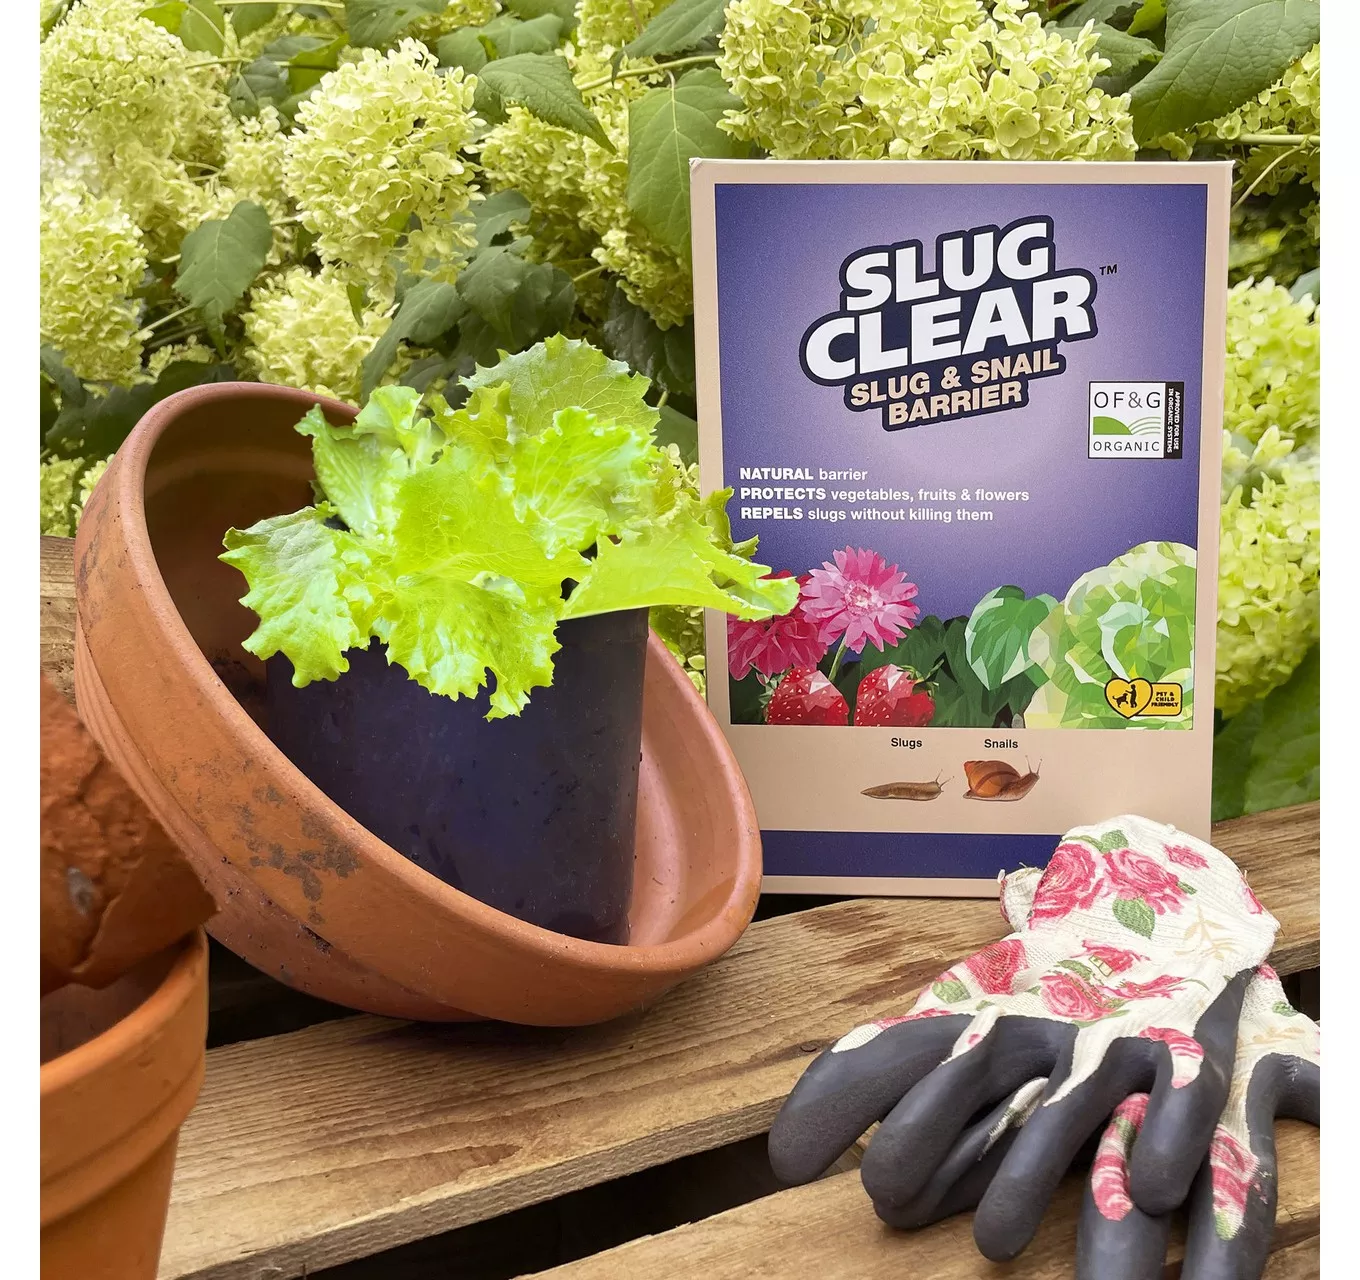 SlugClear Slug/Snail Barrier